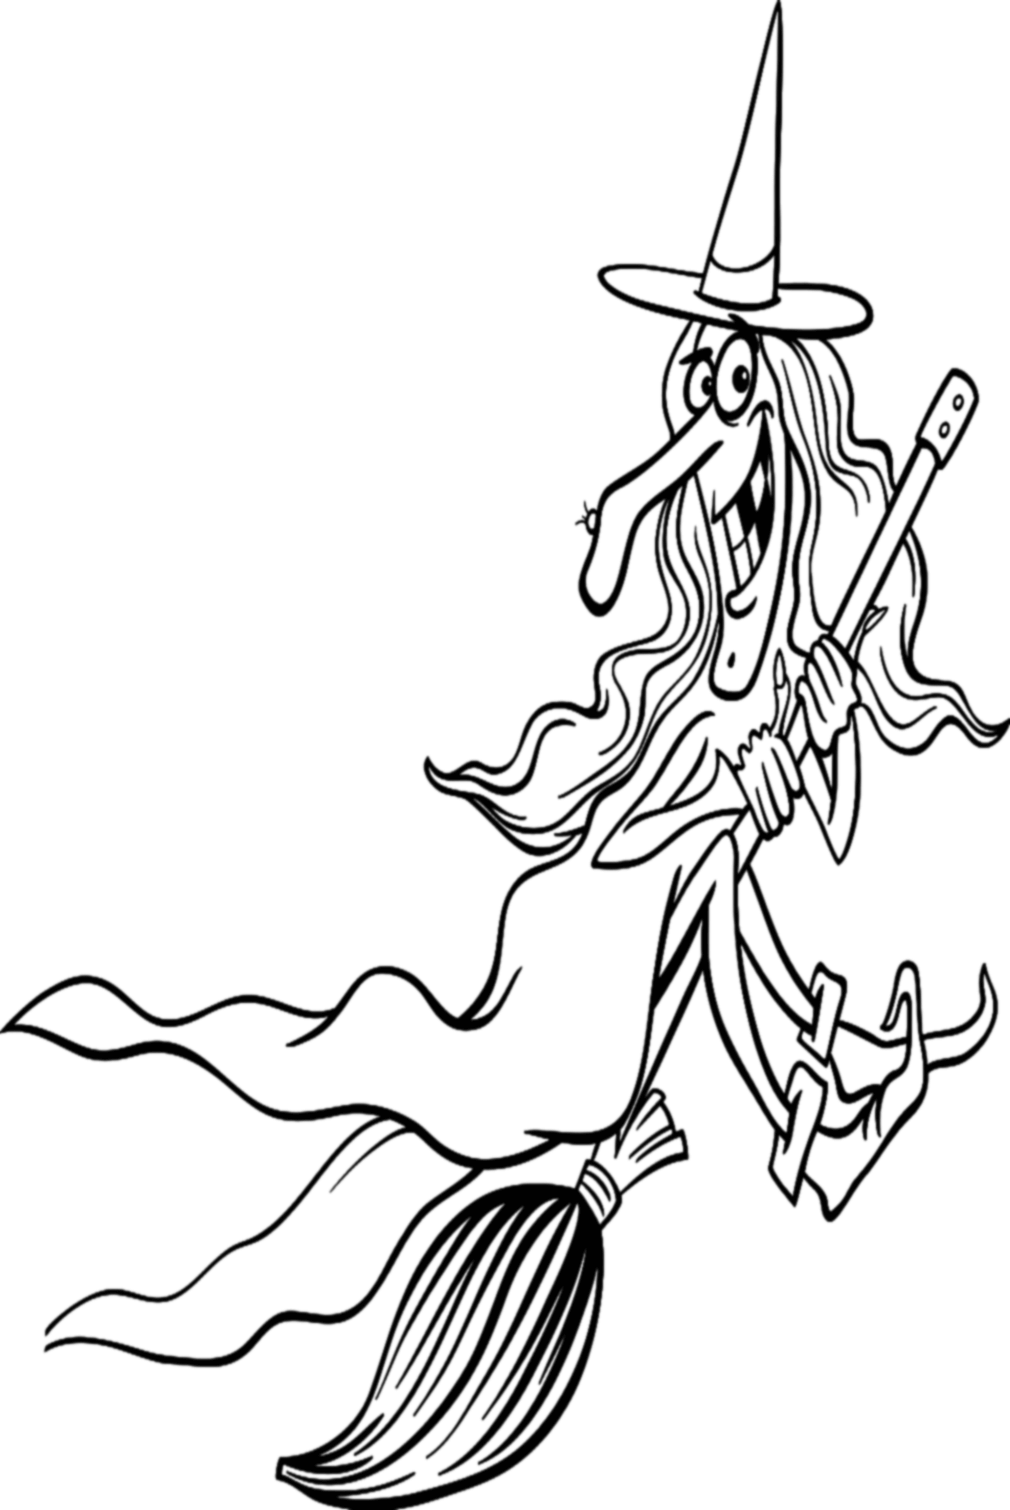 Página para colorear de sombrero de bruja de dibujos animados de Witch Hat